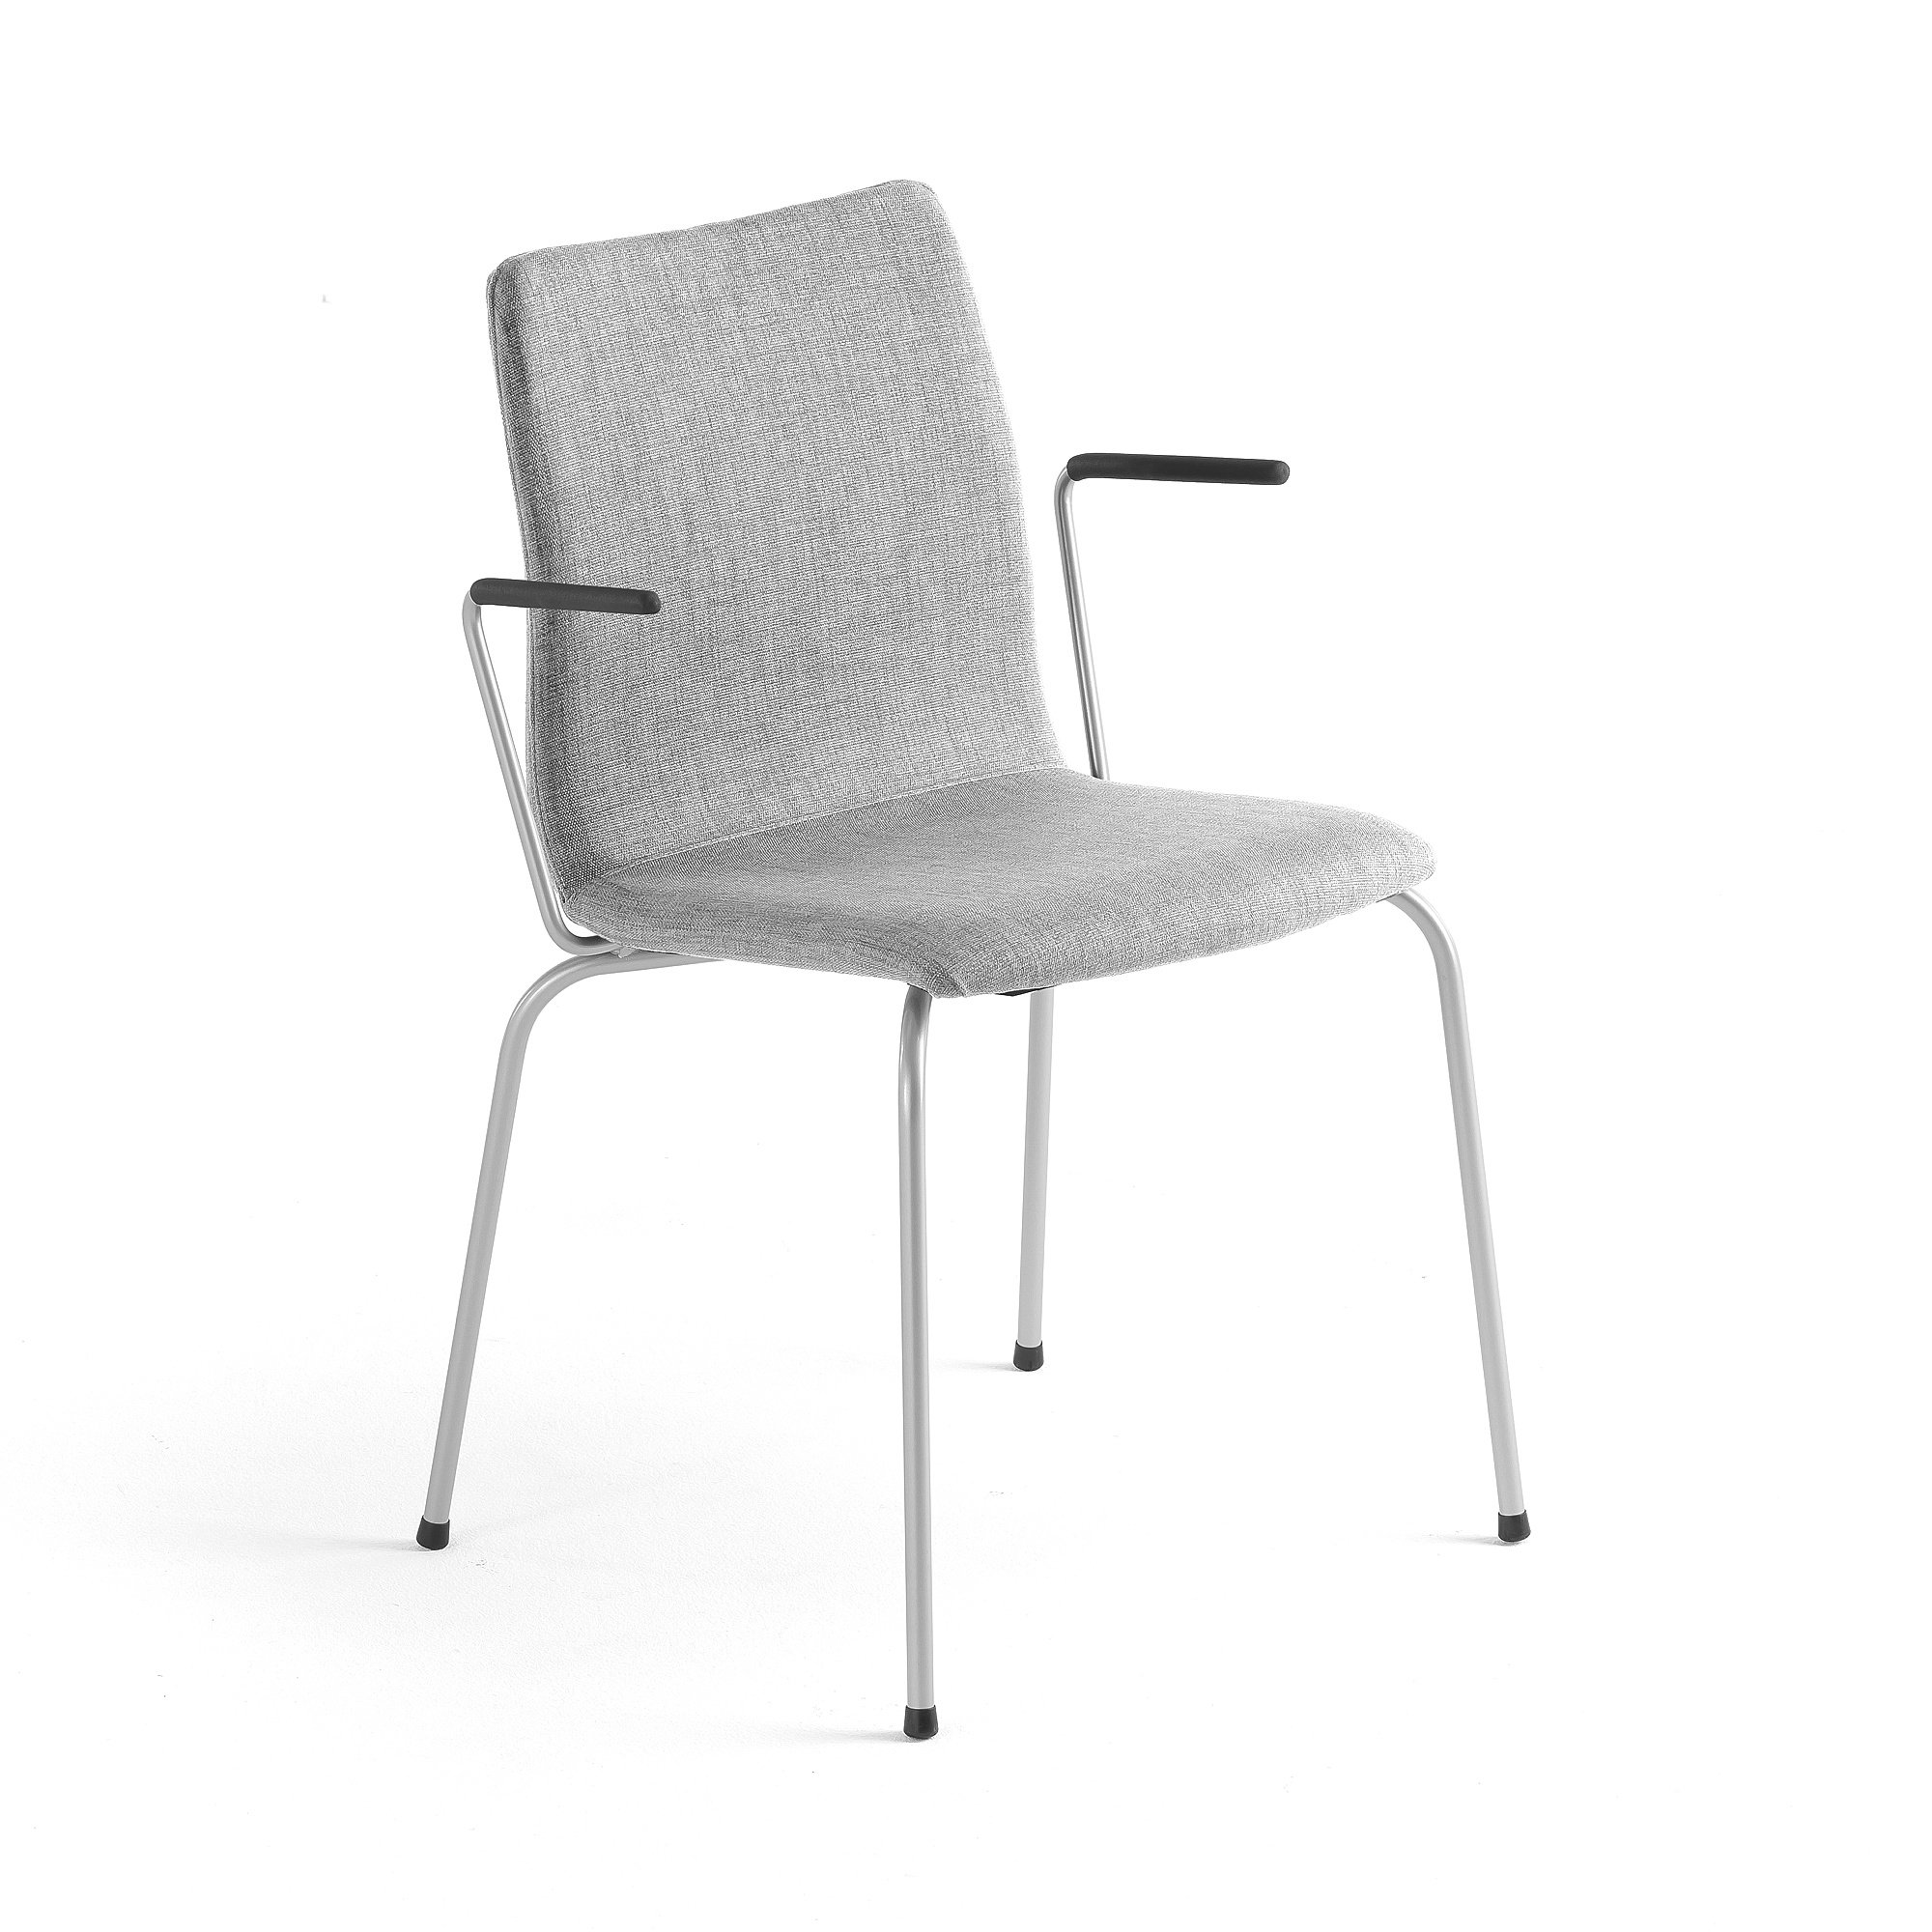 Konferenčná stolička OTTAWA, s opierkami rúk, strieborná/šedá